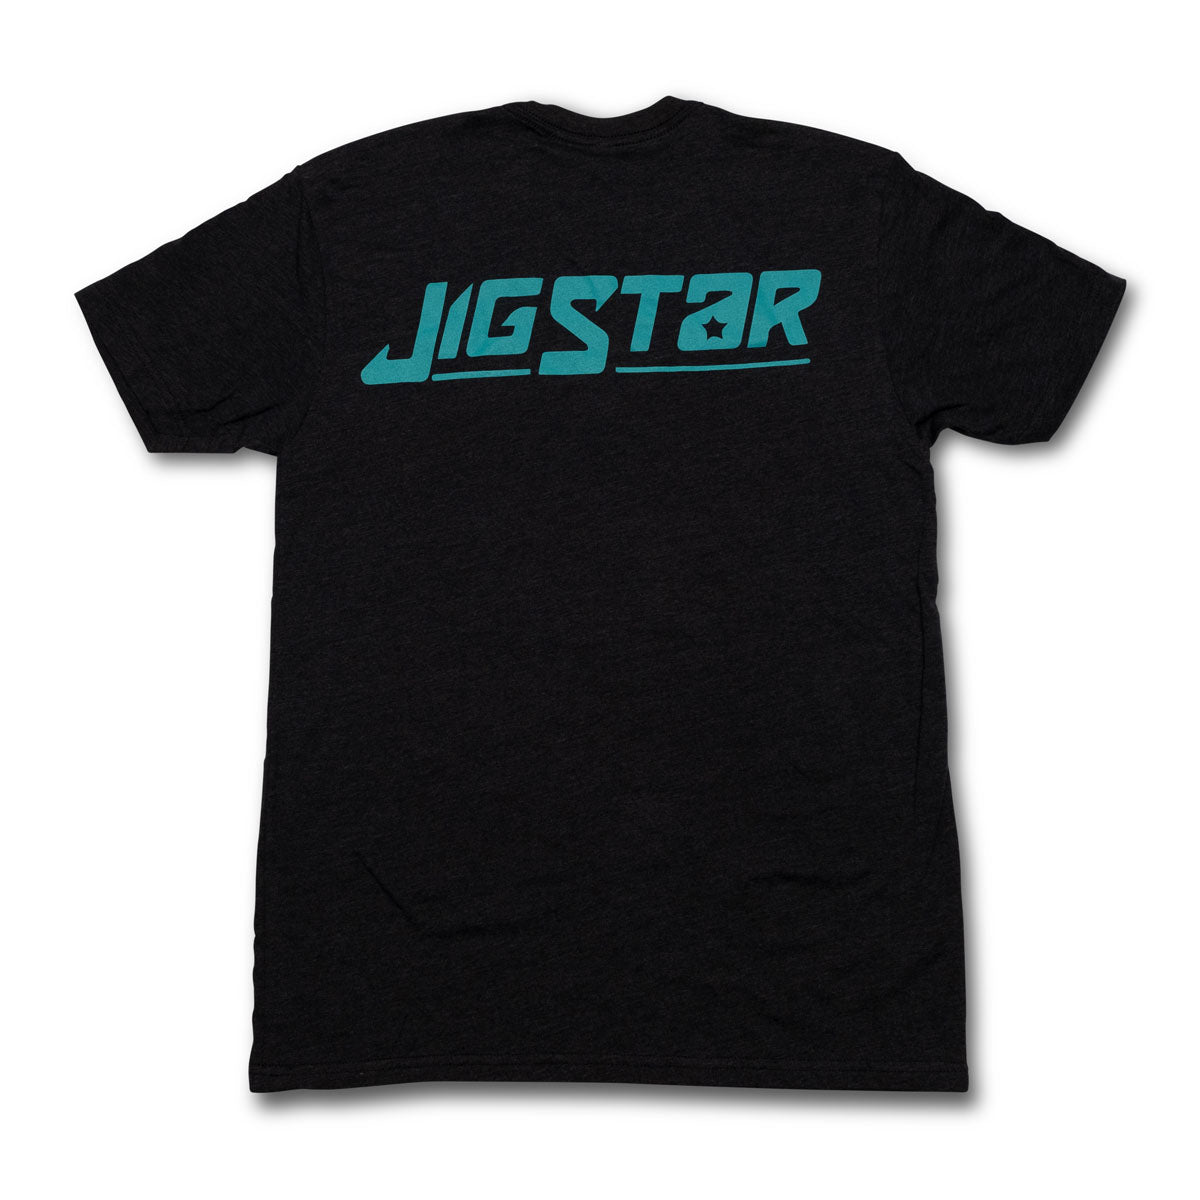 Jig Star Short Sleeve Comfort T-shirt - Charcoal